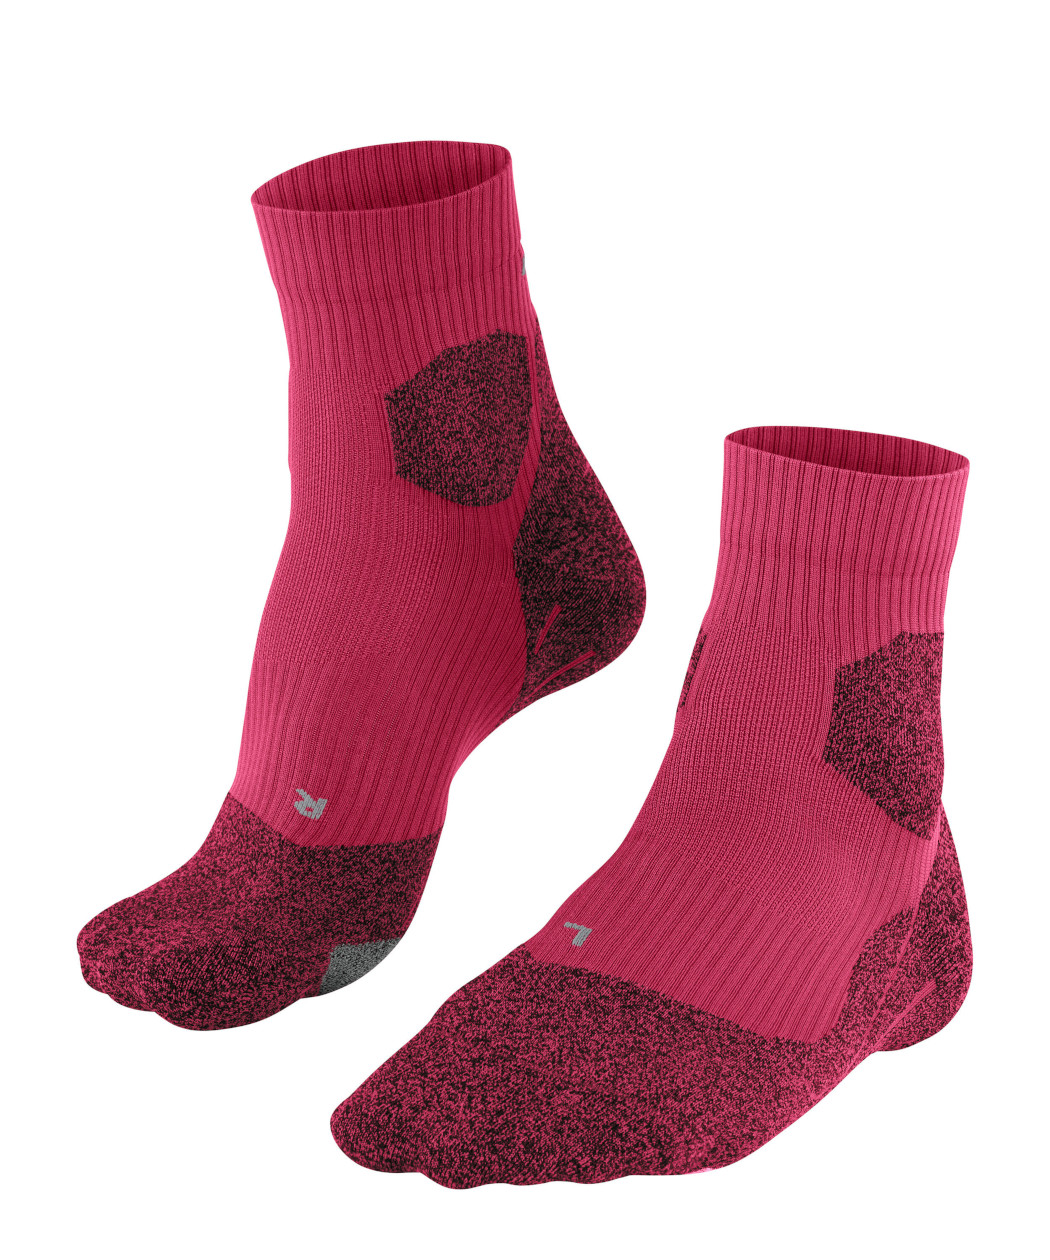 Falke RU Trail Grip Damen Socken